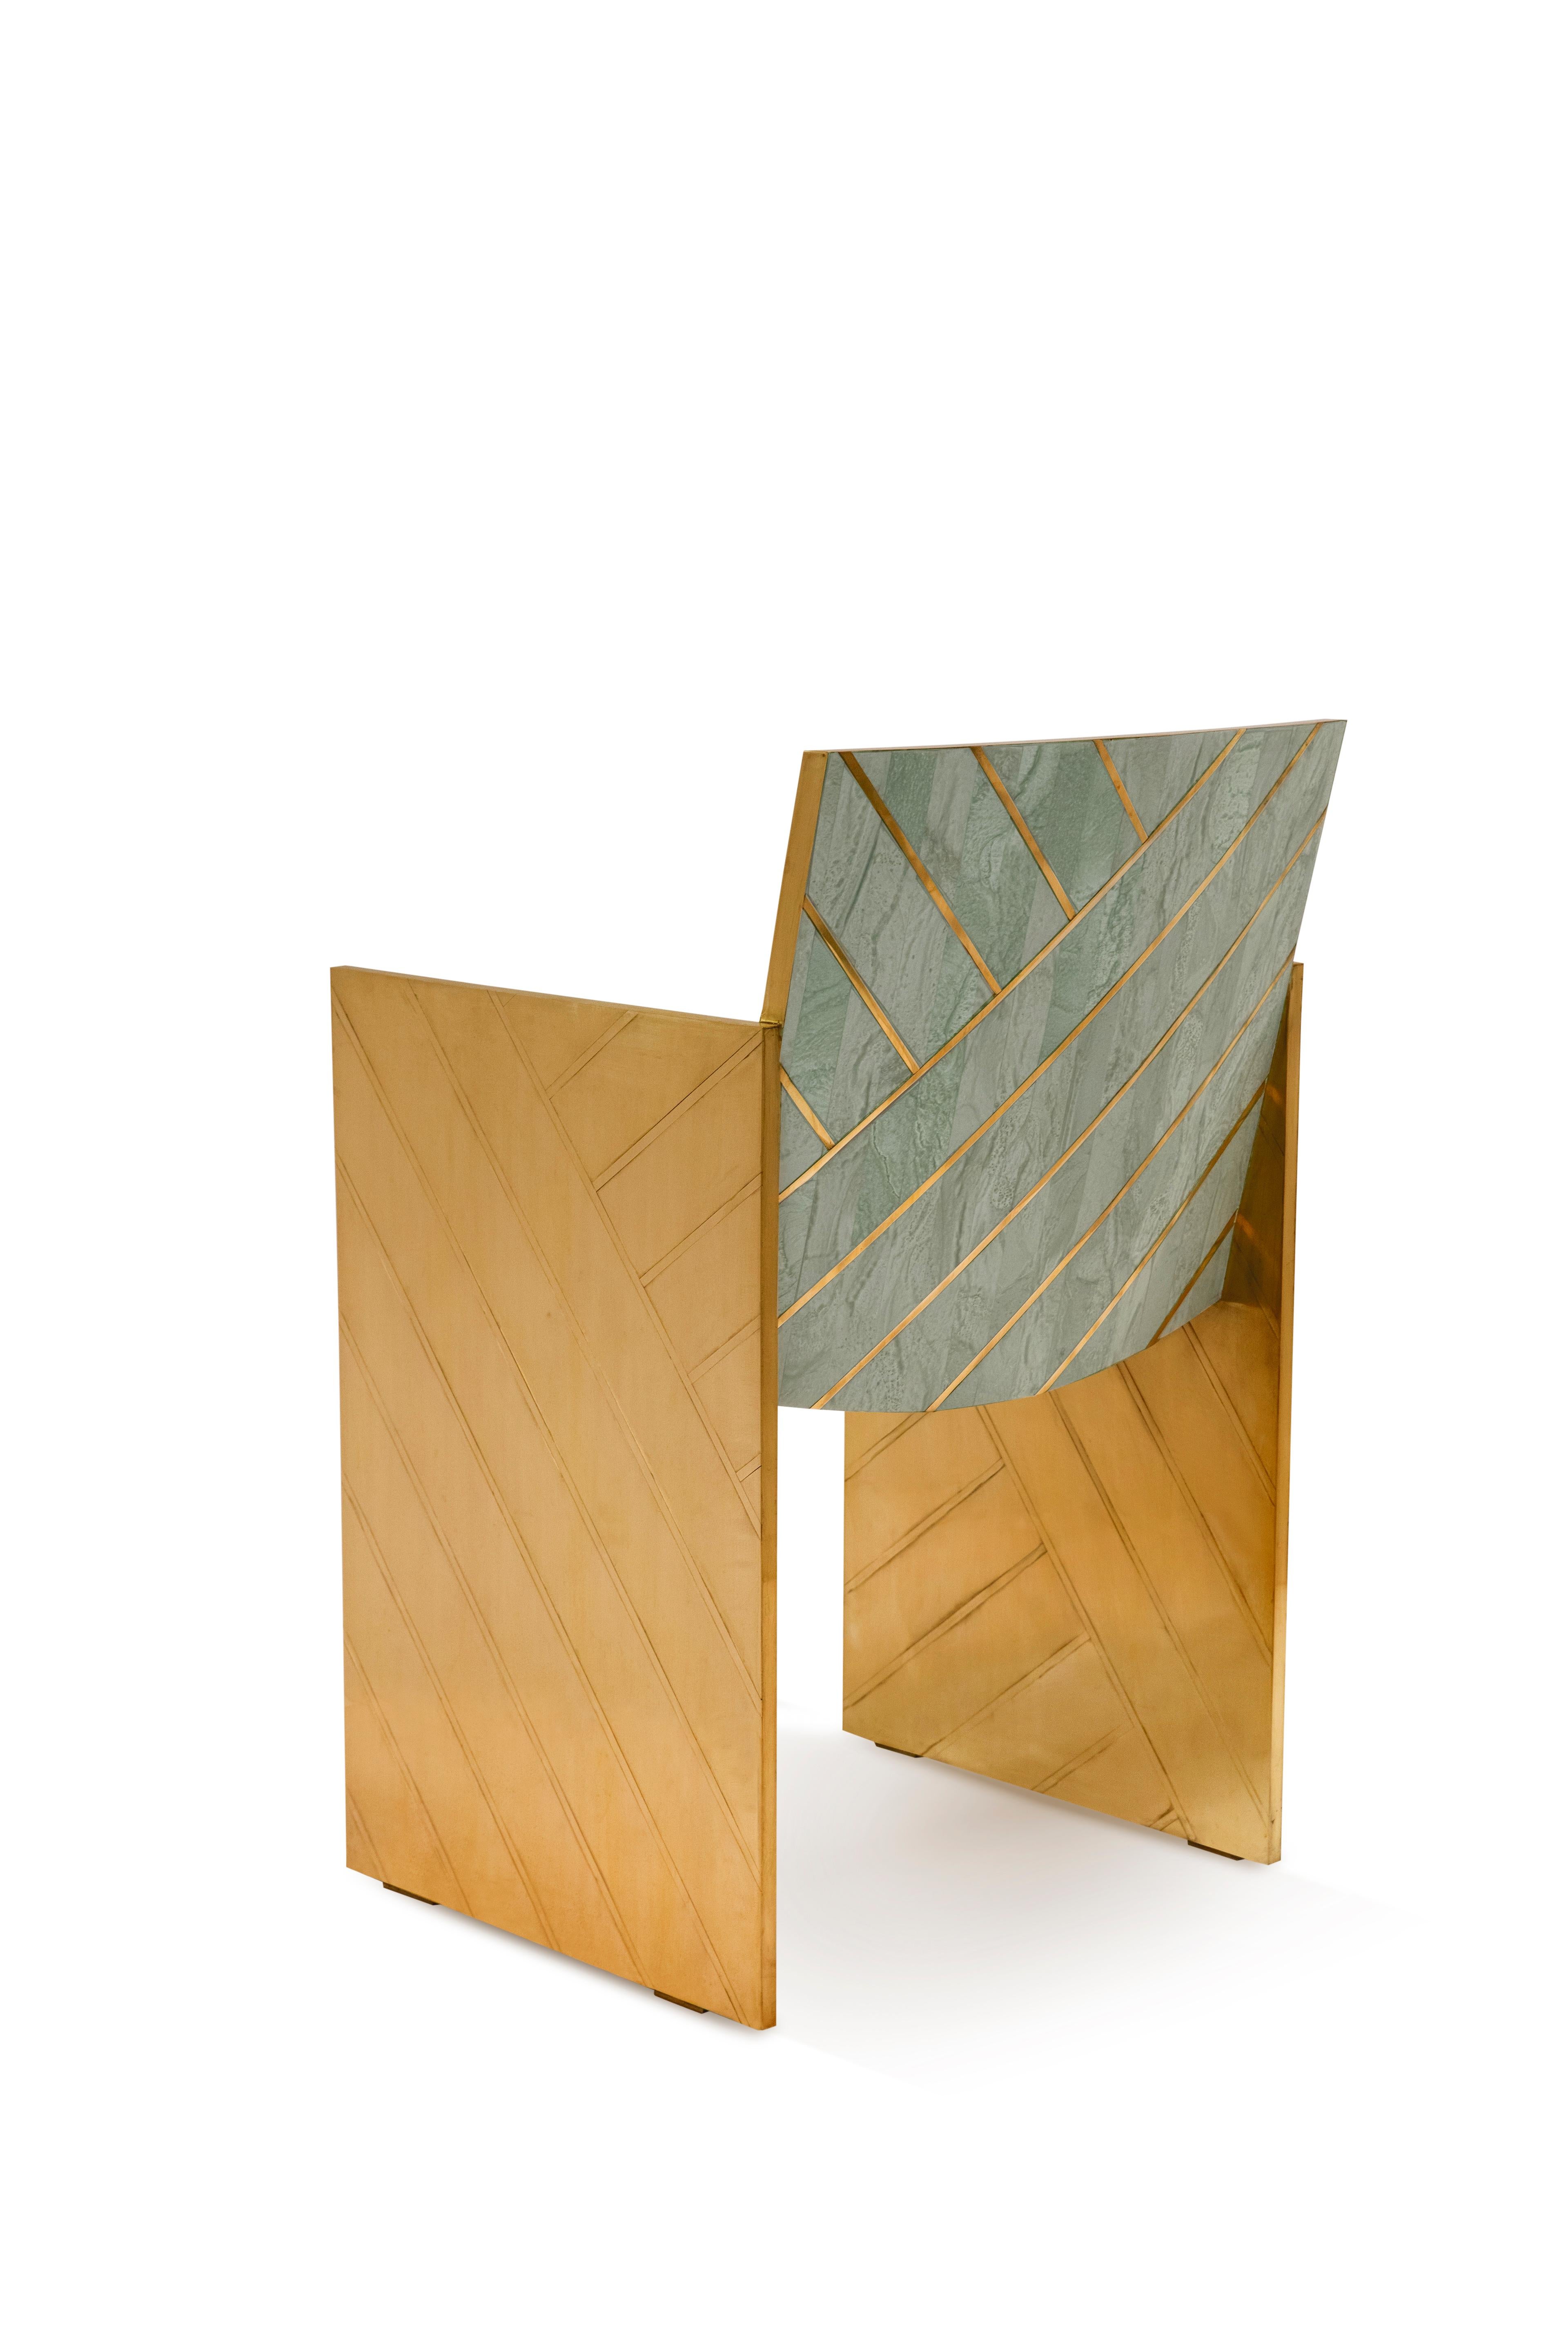 Nesso Mintgrüner Esszimmerstuhl  with Brass Inlay von Matteo Cibic ist ein schöner Stuhl aus perlmuttfarbenem Harz mit geometrischer Messingintarsie. Er lässt sich hervorragend mit dem Esstisch Nesso kombinieren. Er ist in drei Farben erhältlich: